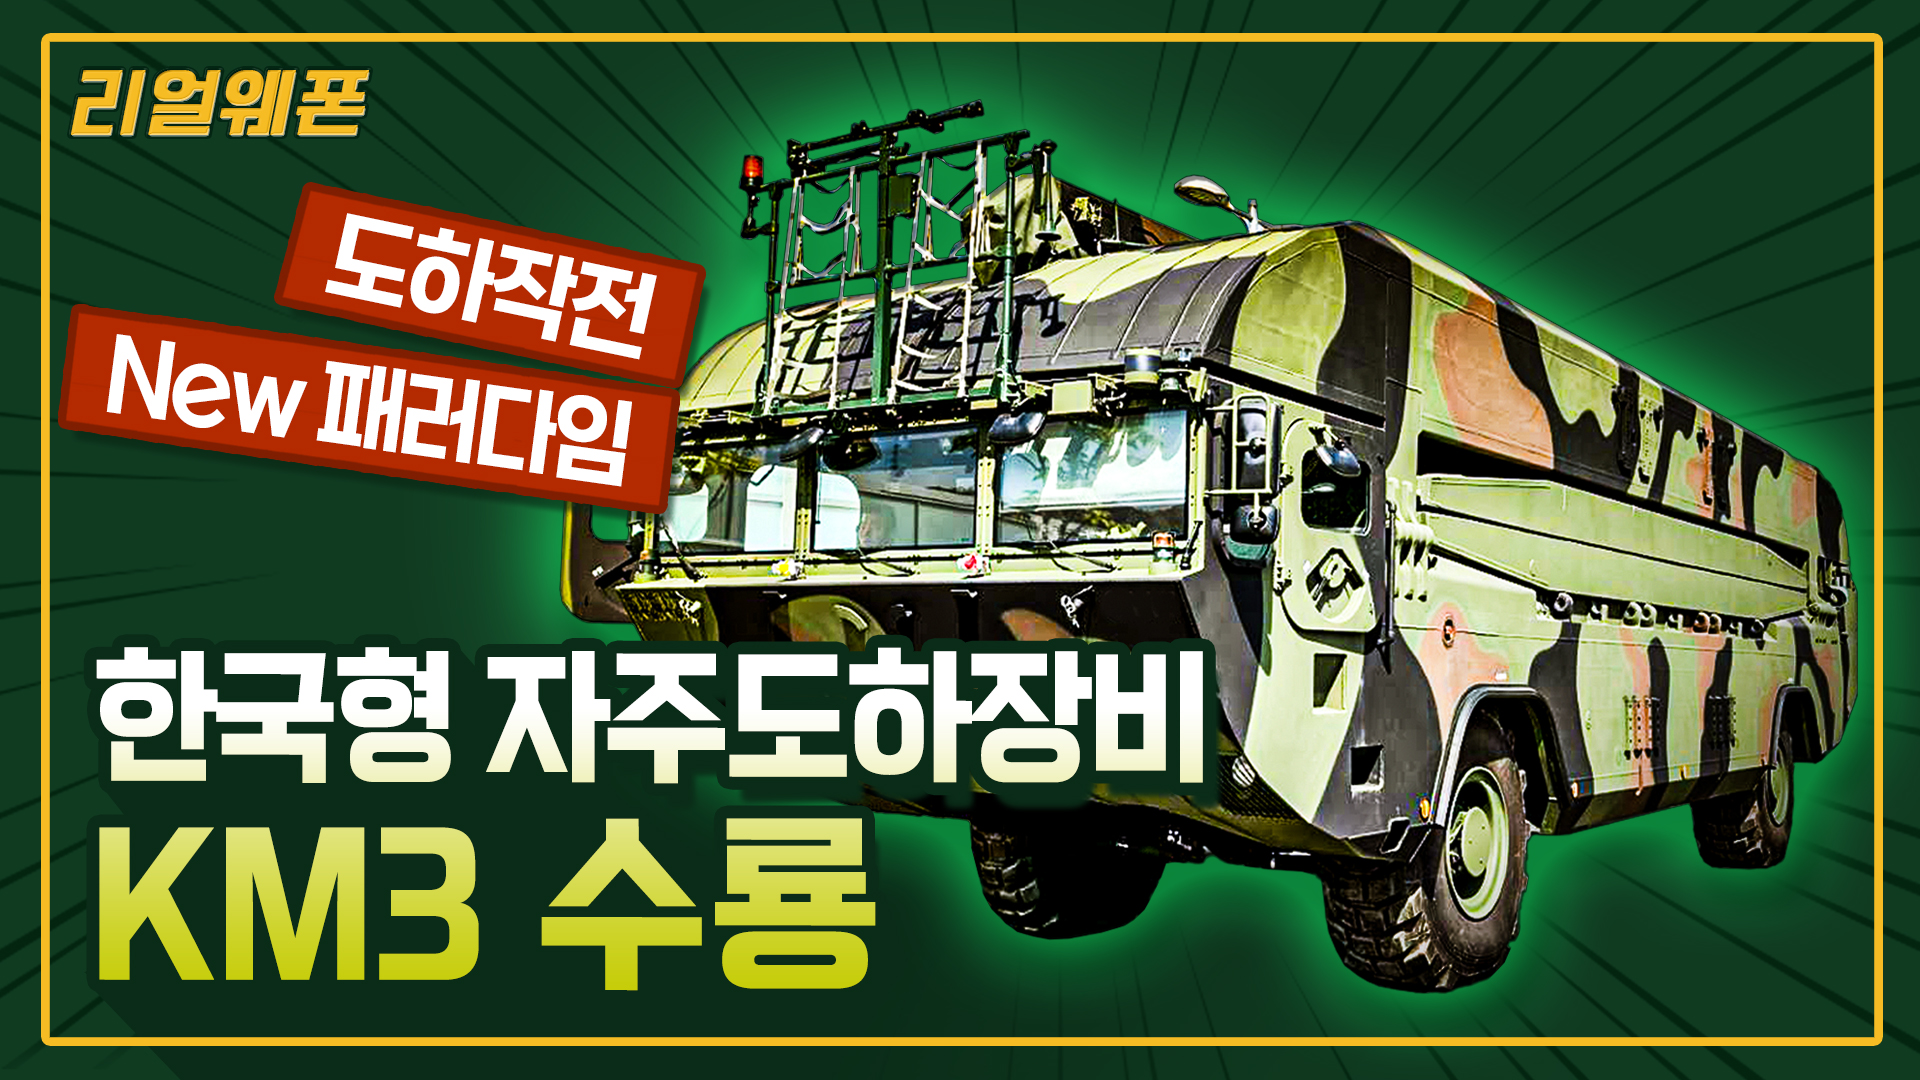 도하작전의 NEW 패러다임 한국형 자주도하장비 전력화 완료! ◆'수룡 KM3' ☆리얼웨폰249 I 국방홍보원